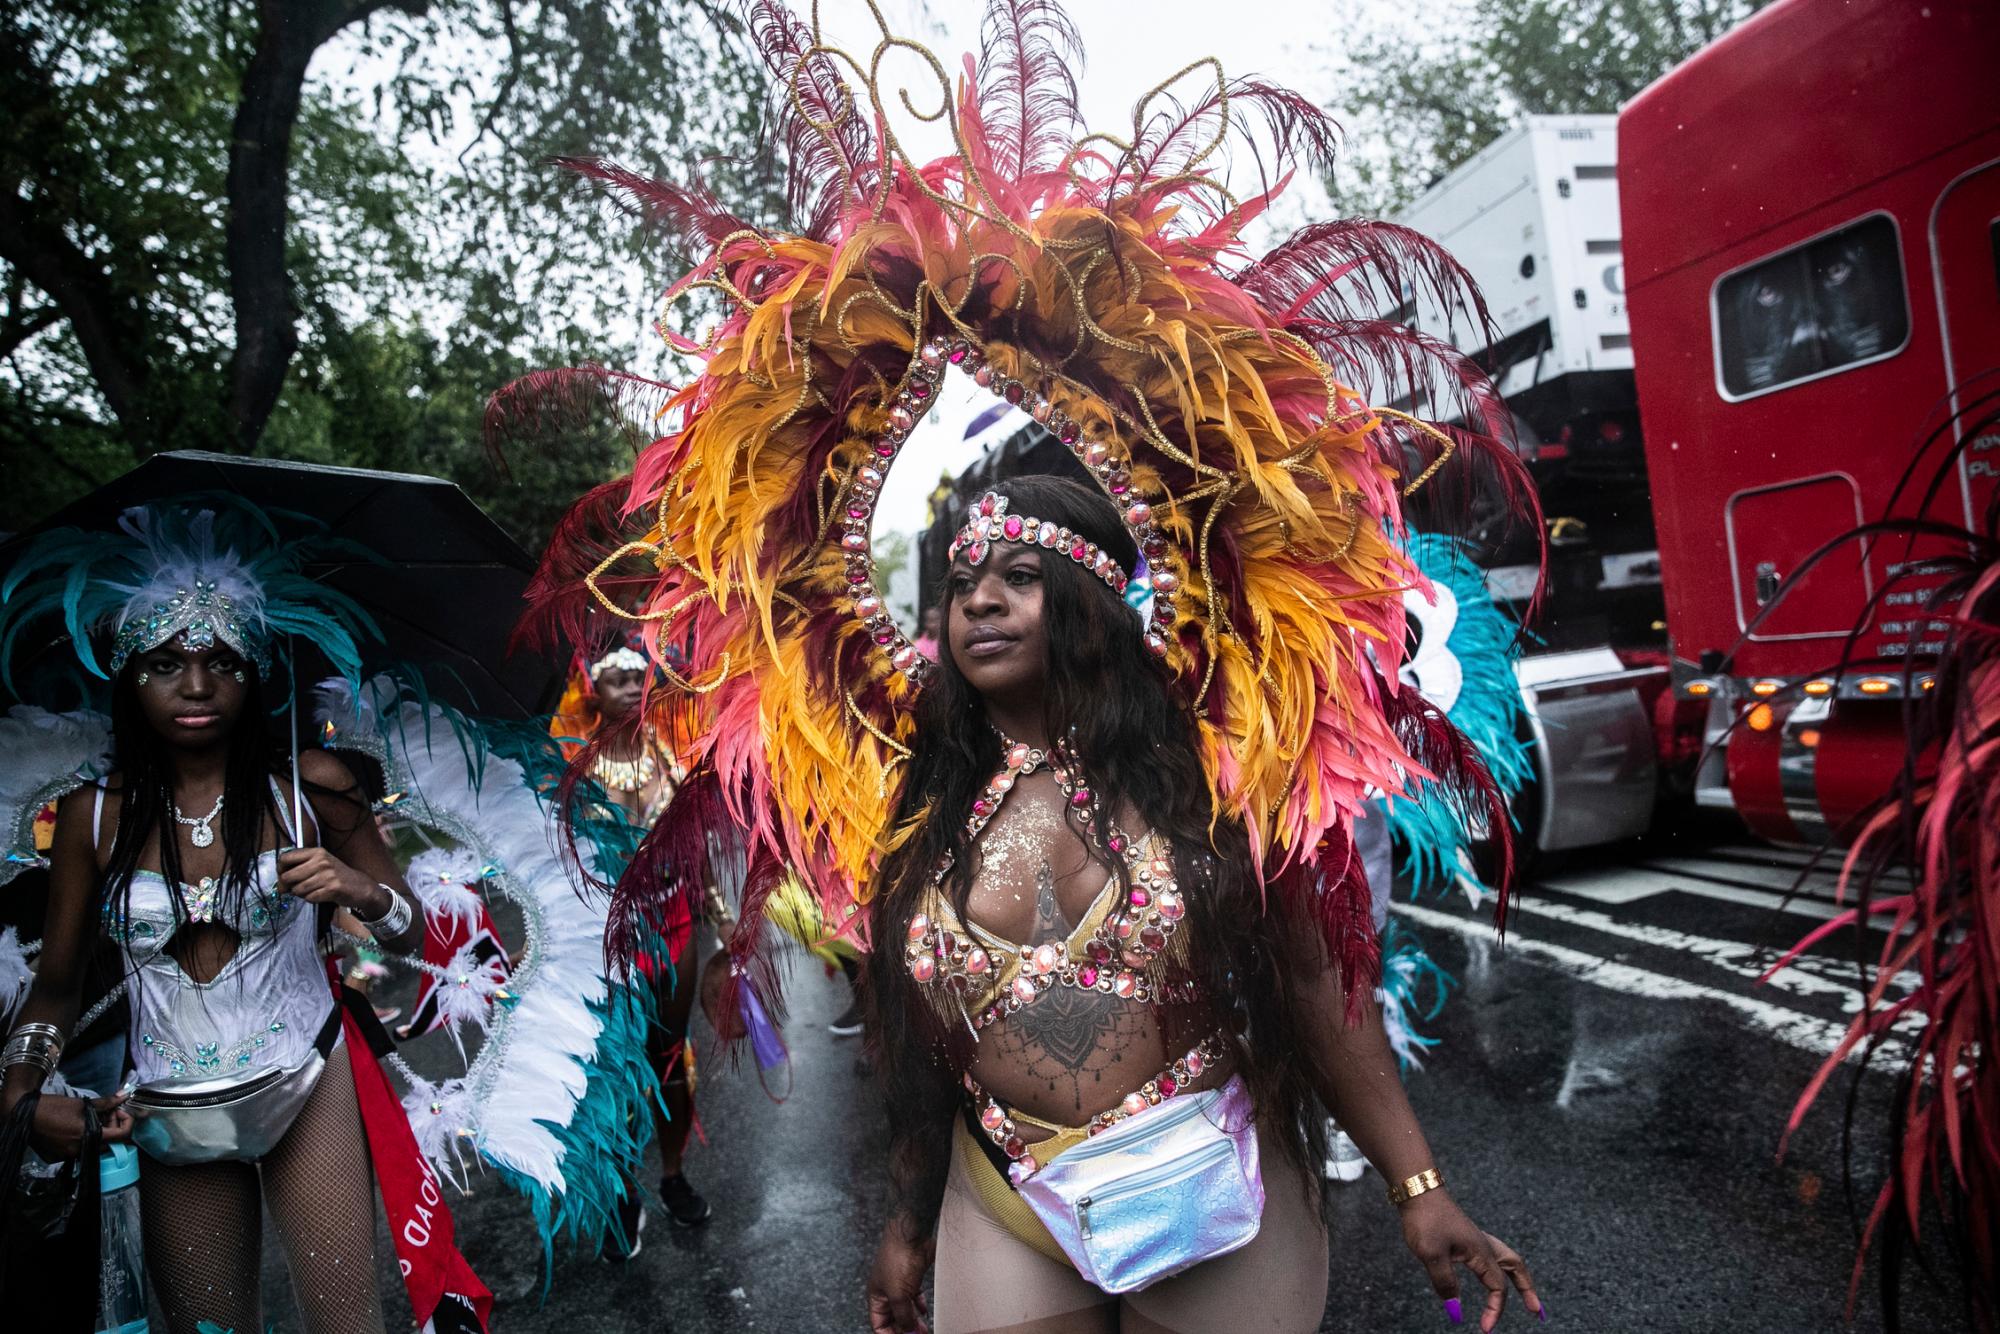 Participantes durante el Desfile del Día de las Indias Occidentales en el distrito de Brooklyn de Nueva York, el lunes 2 de septiembre de 2019.